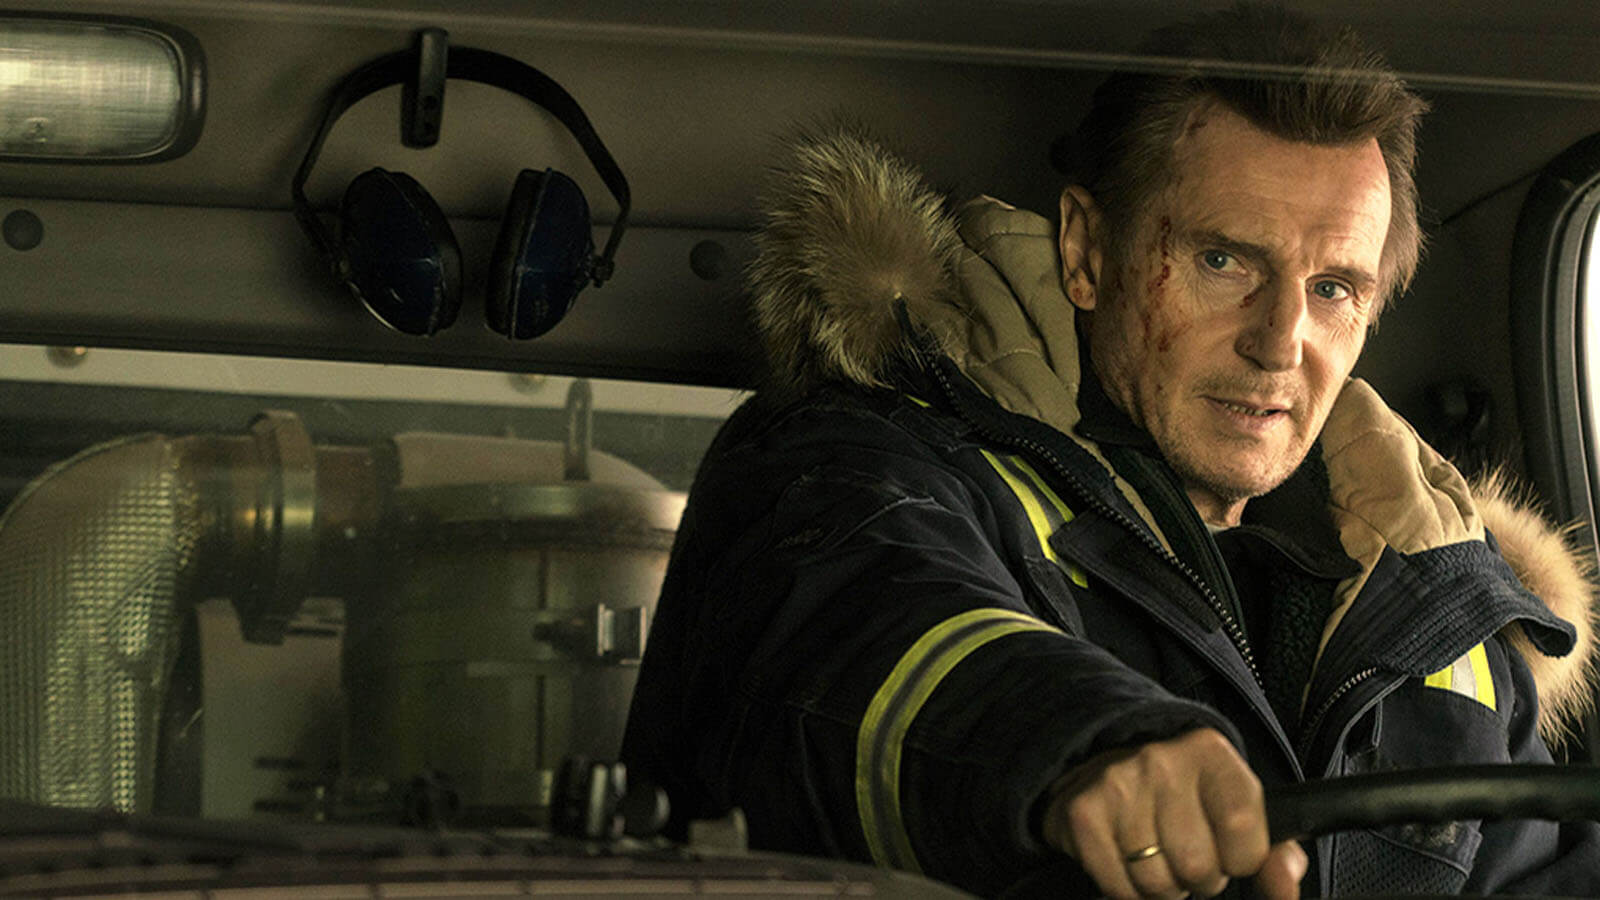 Vingança a Sangue-Frio: 7 Curiosidades sobre o filme com Liam Neeson que você precisa saber 1